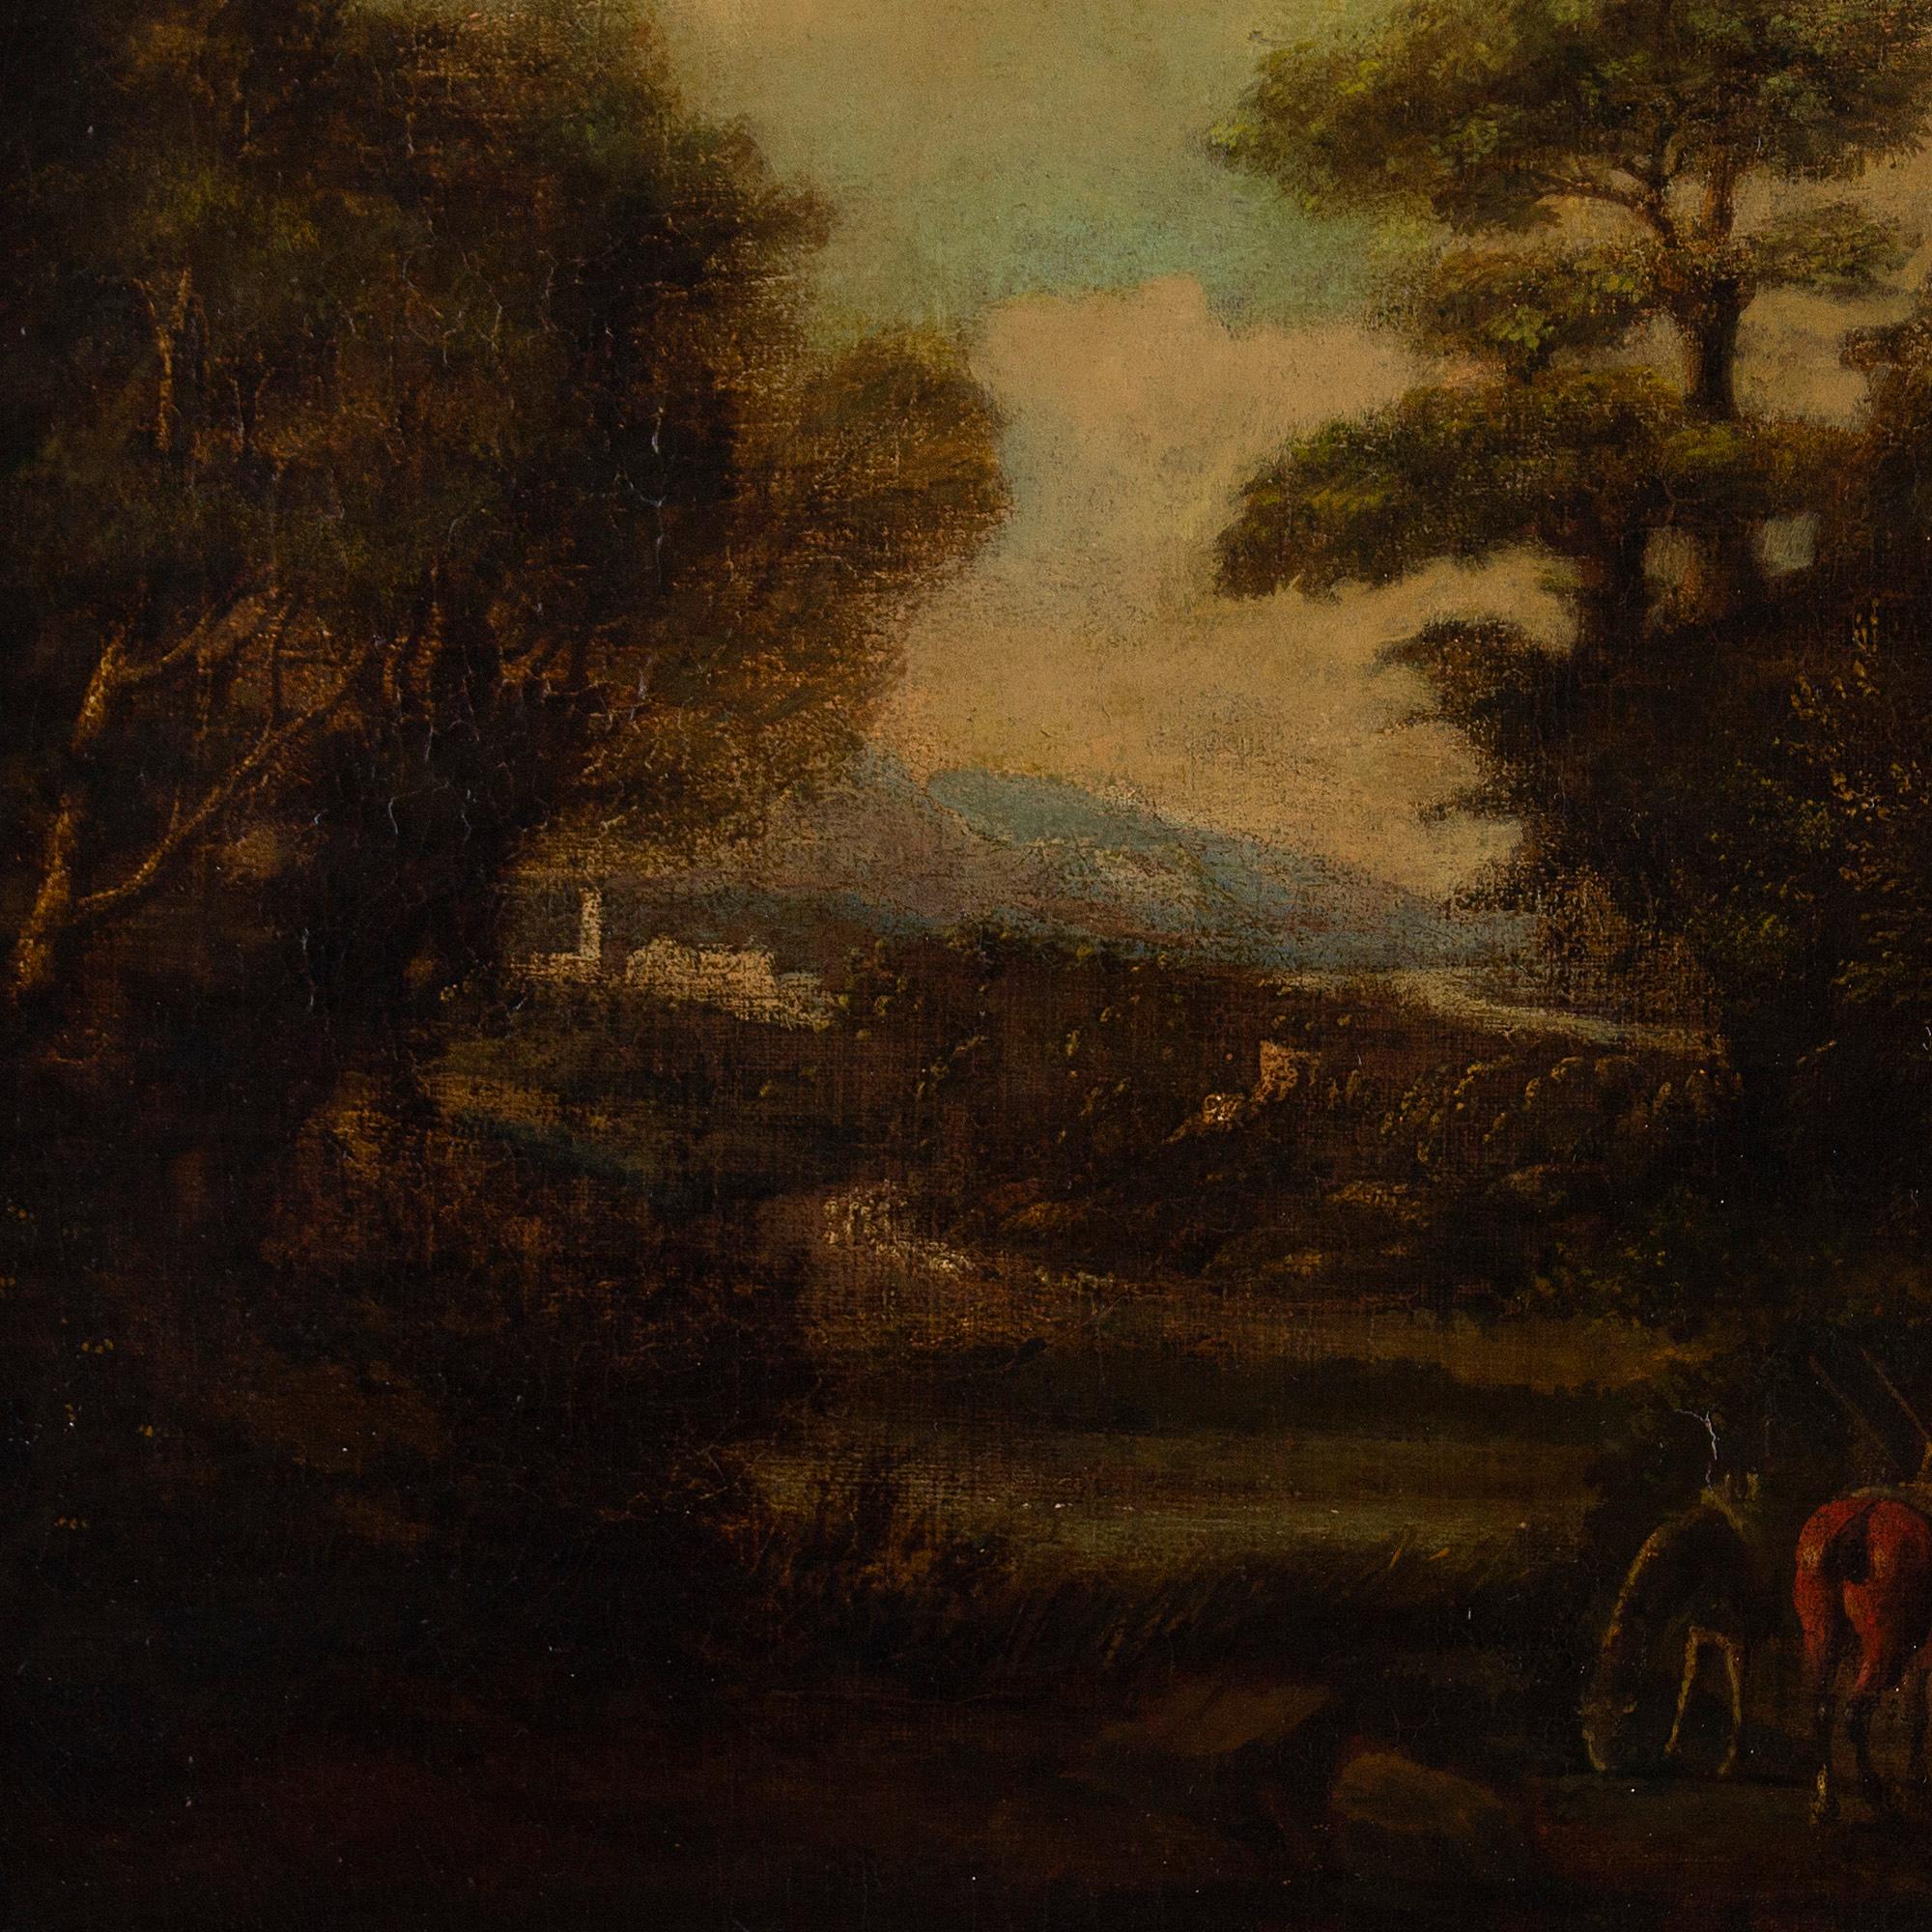 Cette belle huile sur toile du début du XVIIIe siècle représente plusieurs personnages avec des chevaux devant un paysage rural idéalisé avec un village lointain.

L'artiste s'est inspiré des paysages imaginés par les peintres baroques français,